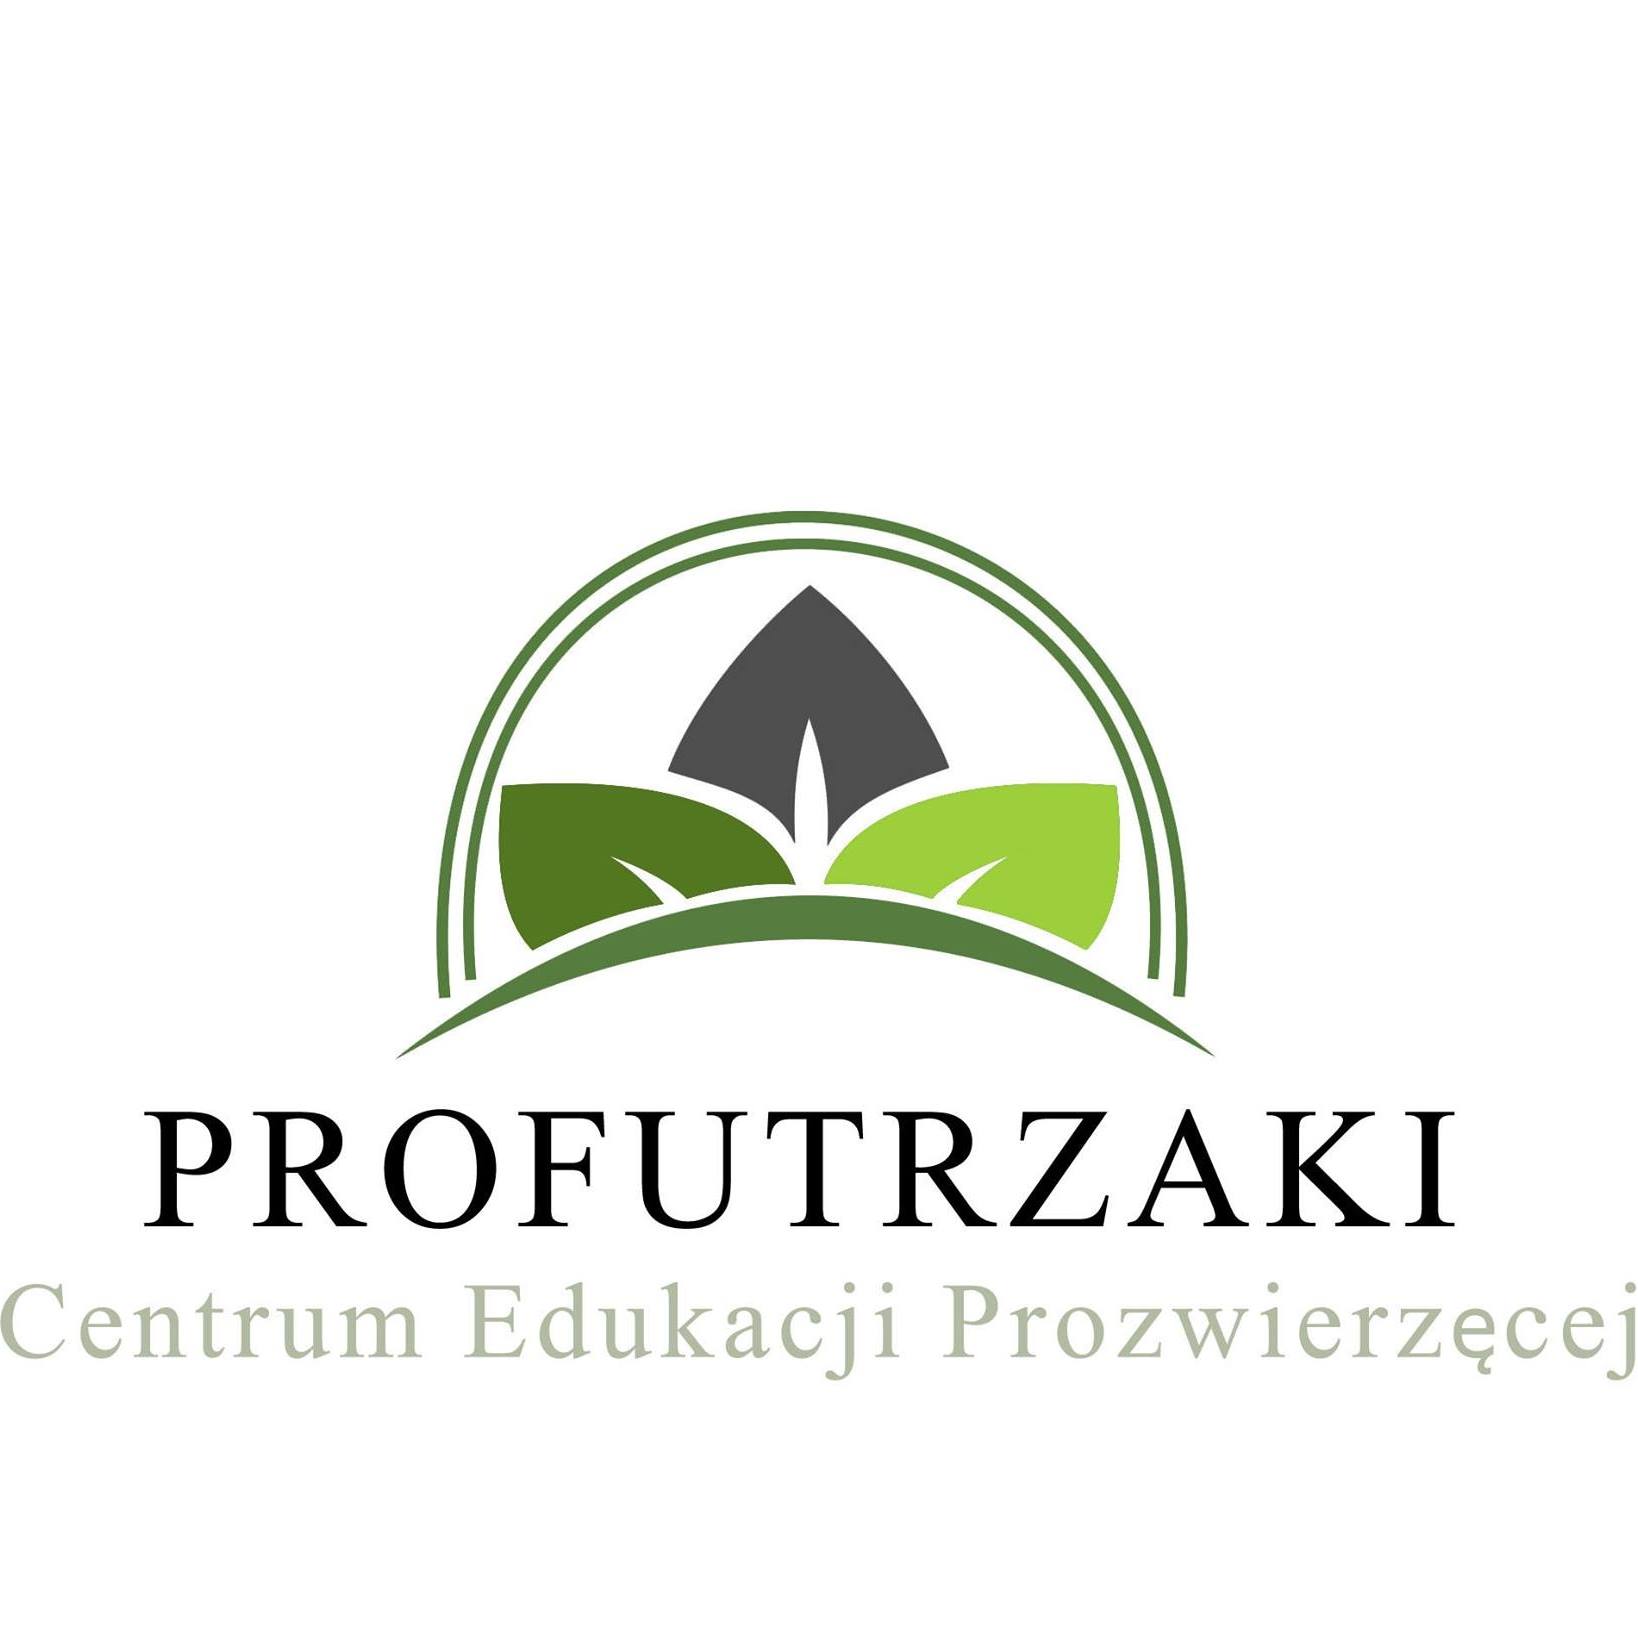 Stowarzyszenie Profutrzaki - Centrum Edukacji Prozwierzęcej